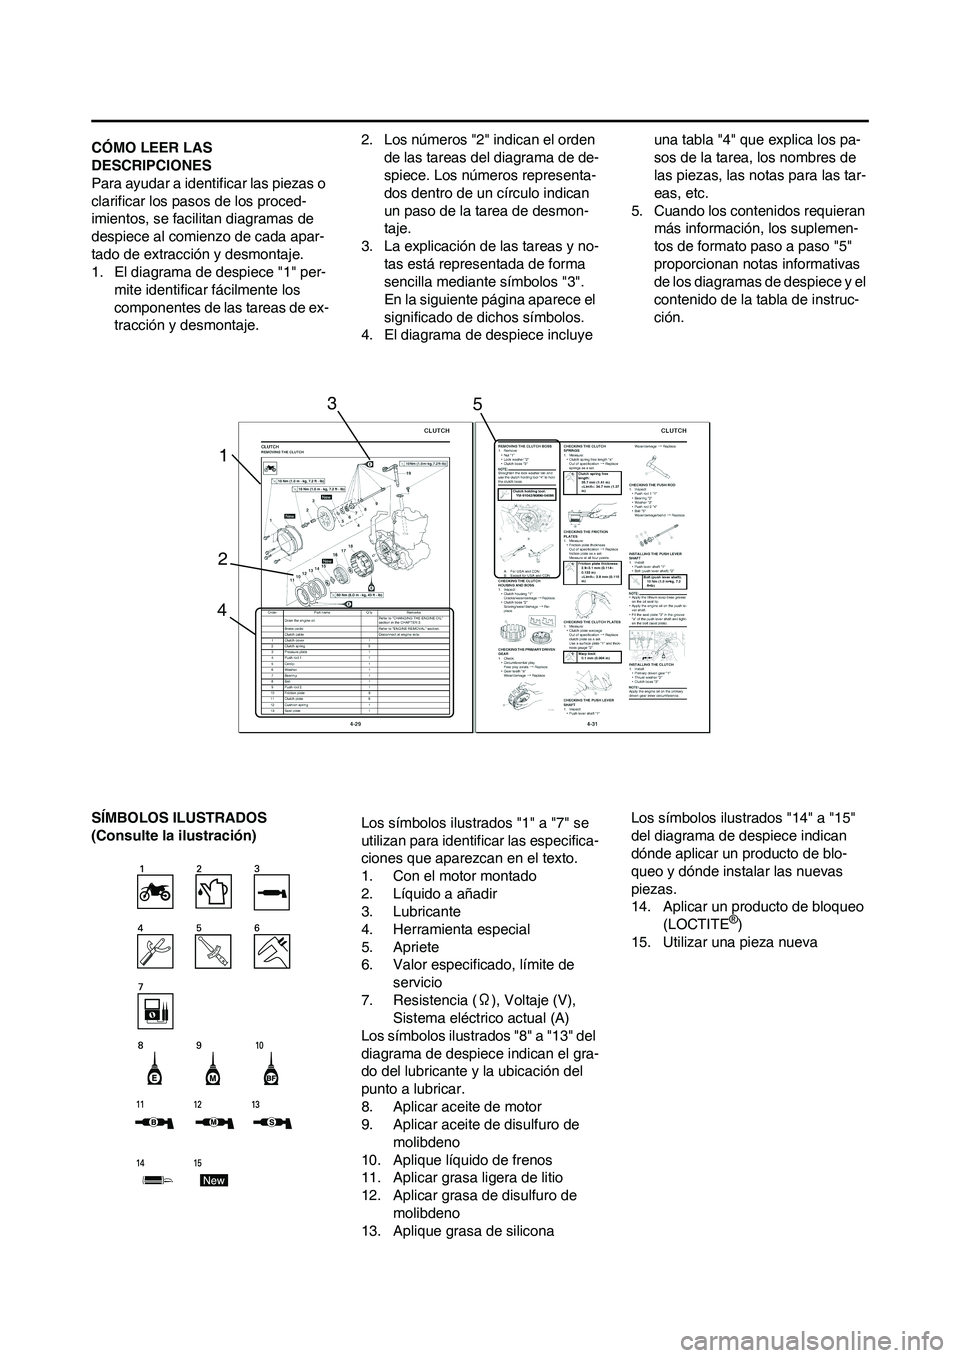 YAMAHA WR 450F 2011  Manuale de Empleo (in Spanish) 
CÓMO LEER LAS 
DESCRIPCIONES
Para ayudar a identificar las piezas o 
clarificar los pasos de los proced-
imientos, se facilitan diagramas de 
despiece al comienzo de cada apar-
tado de extracción y